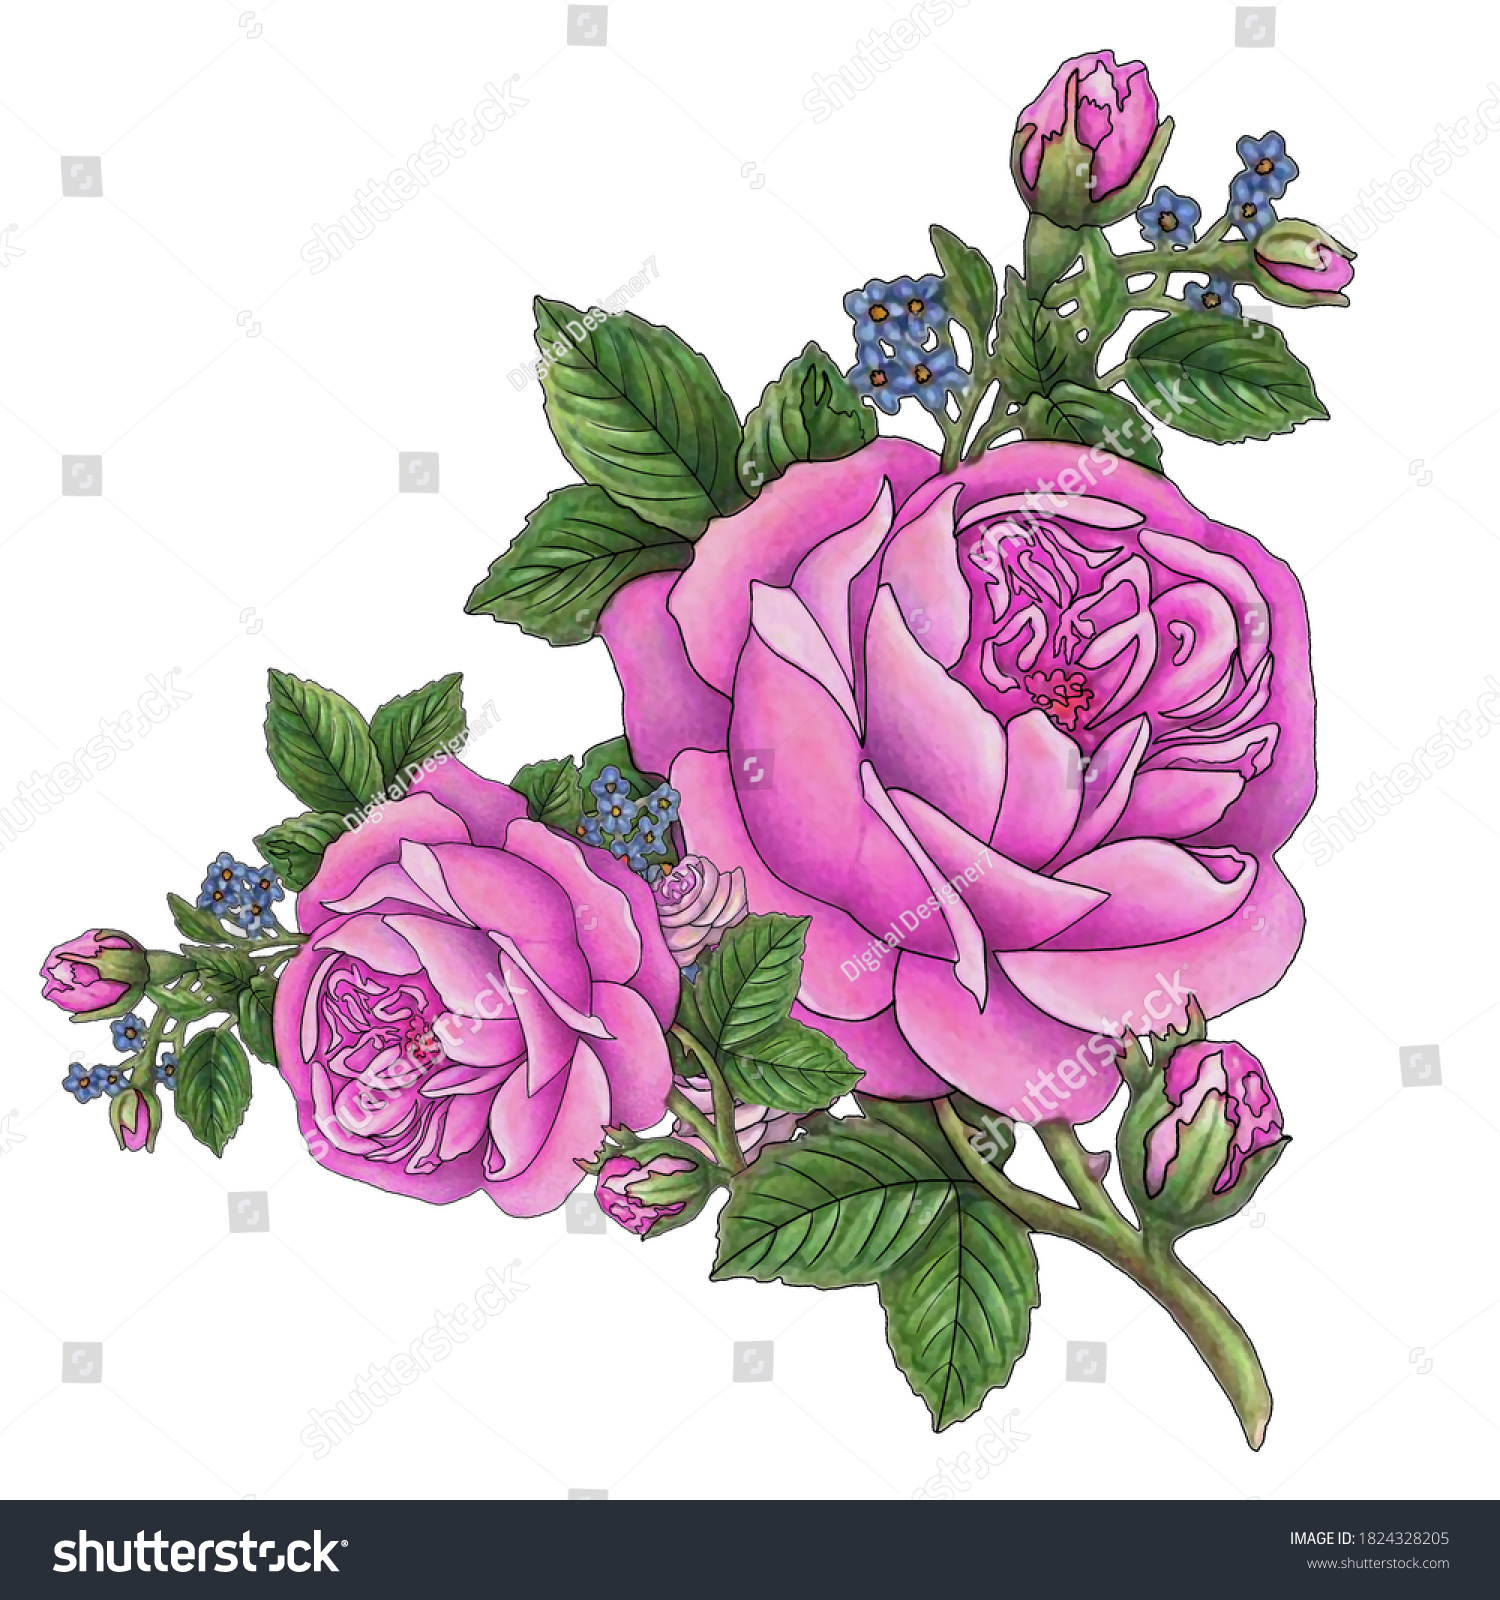 Digital Textile Design Flowers Leaves Ladies Stock Illustration ...